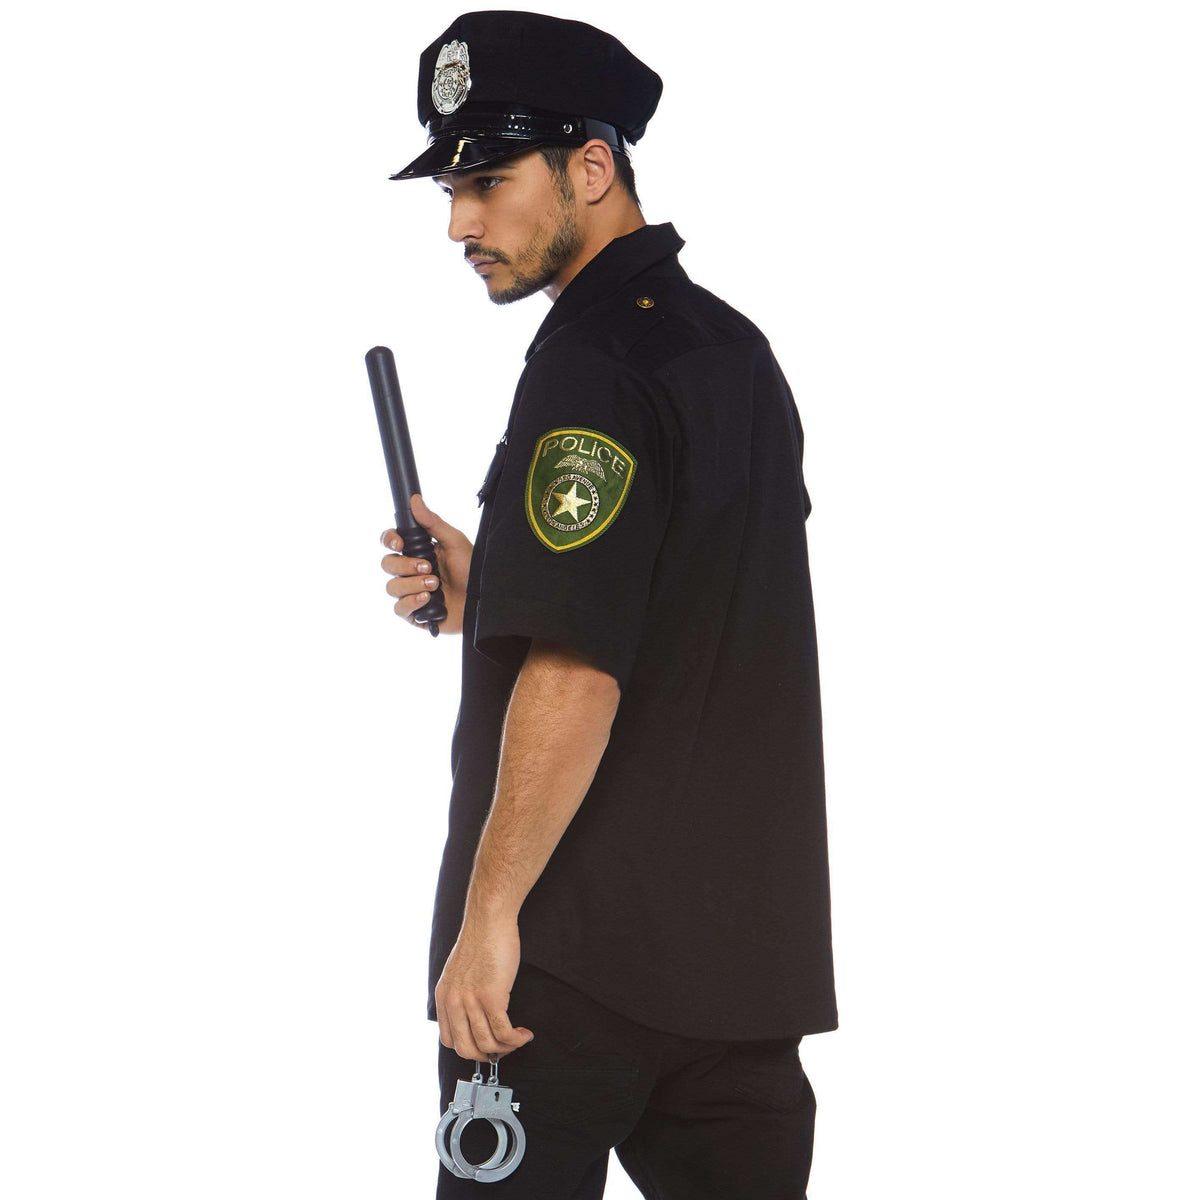 Cuff 'Em Cop Police Uniform Men's Costume